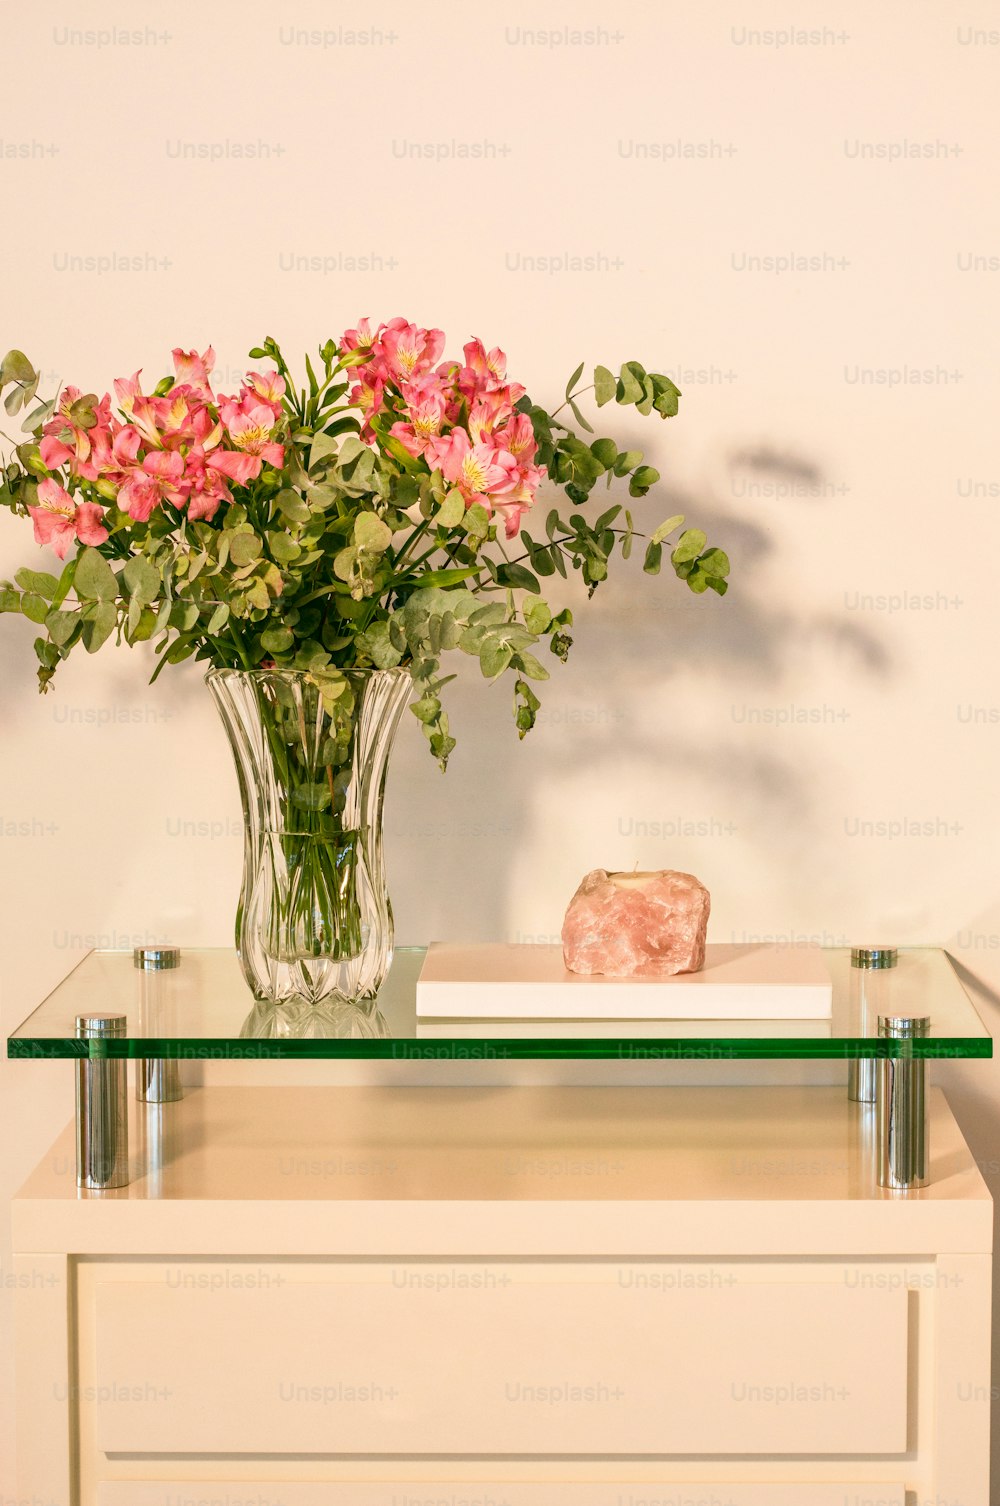 Un jarrón de flores rosadas sentado encima de una mesa